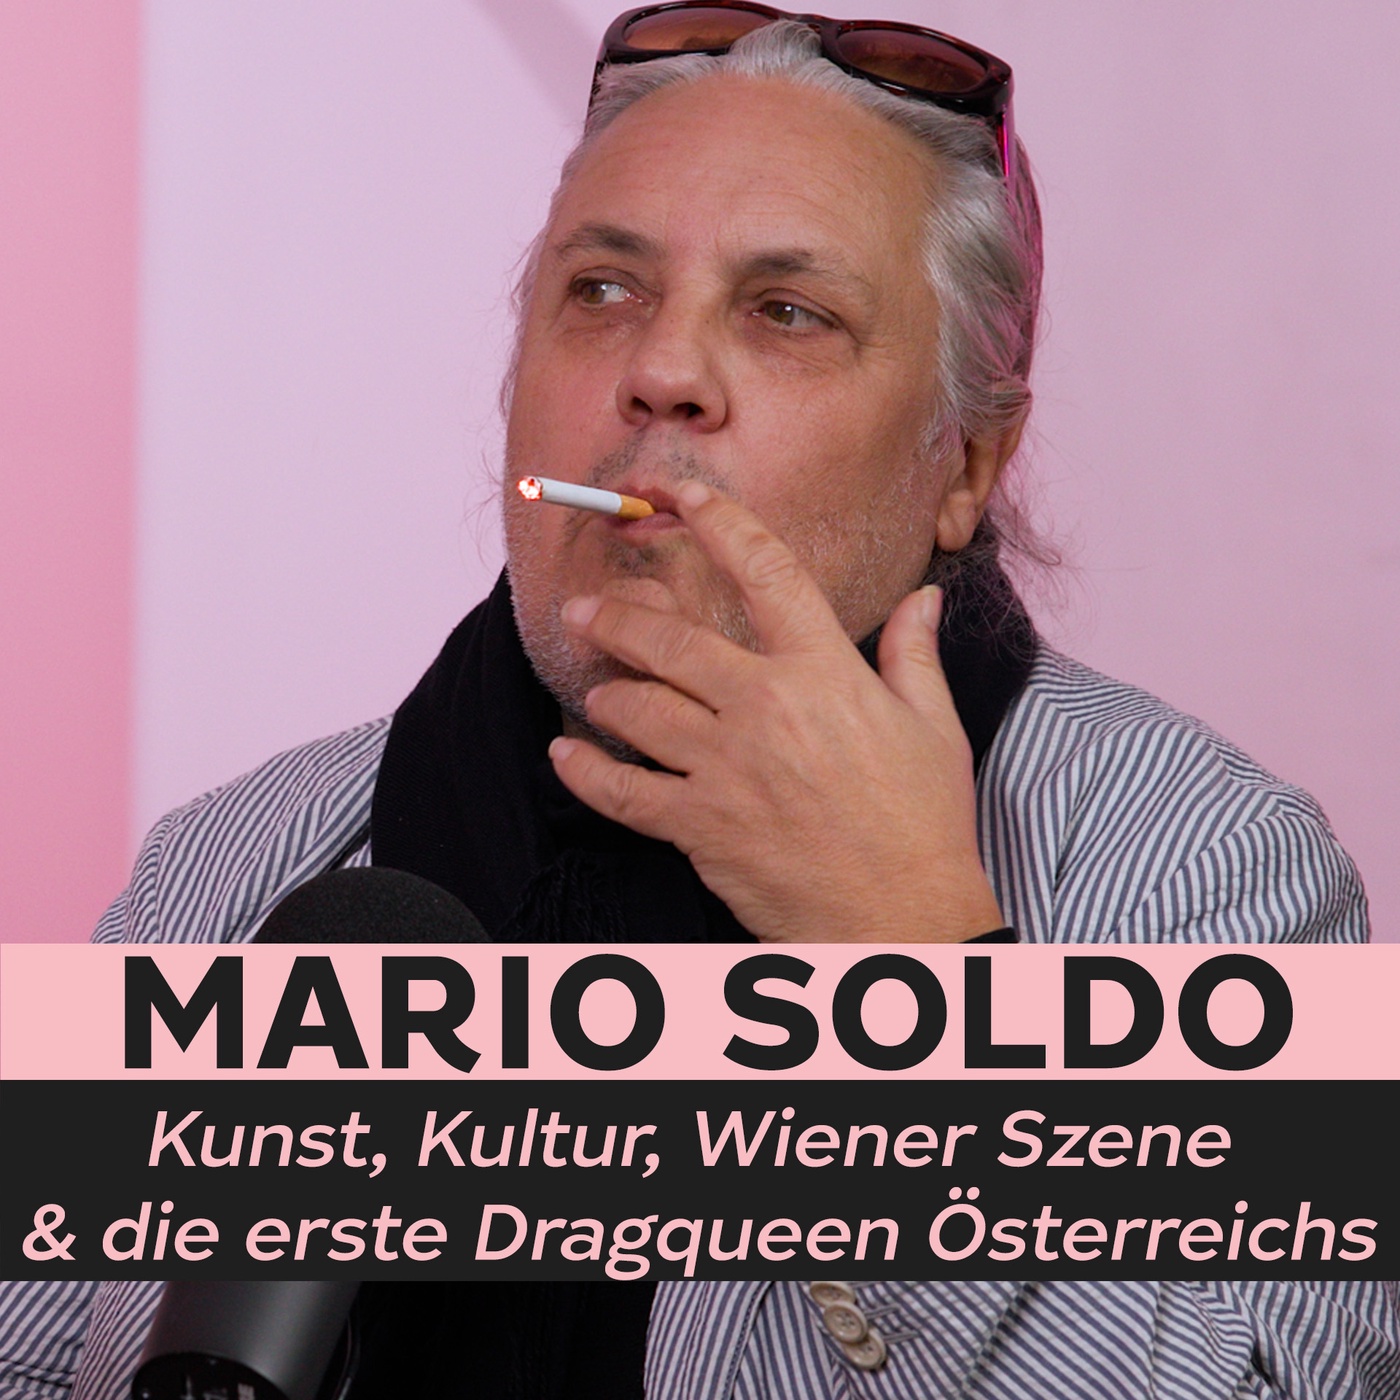 Kunst, Kultur, Wiener Szene & die erste Dragqueen Österreichs | Gert Kunze im Gespräch mit Mario Soldo